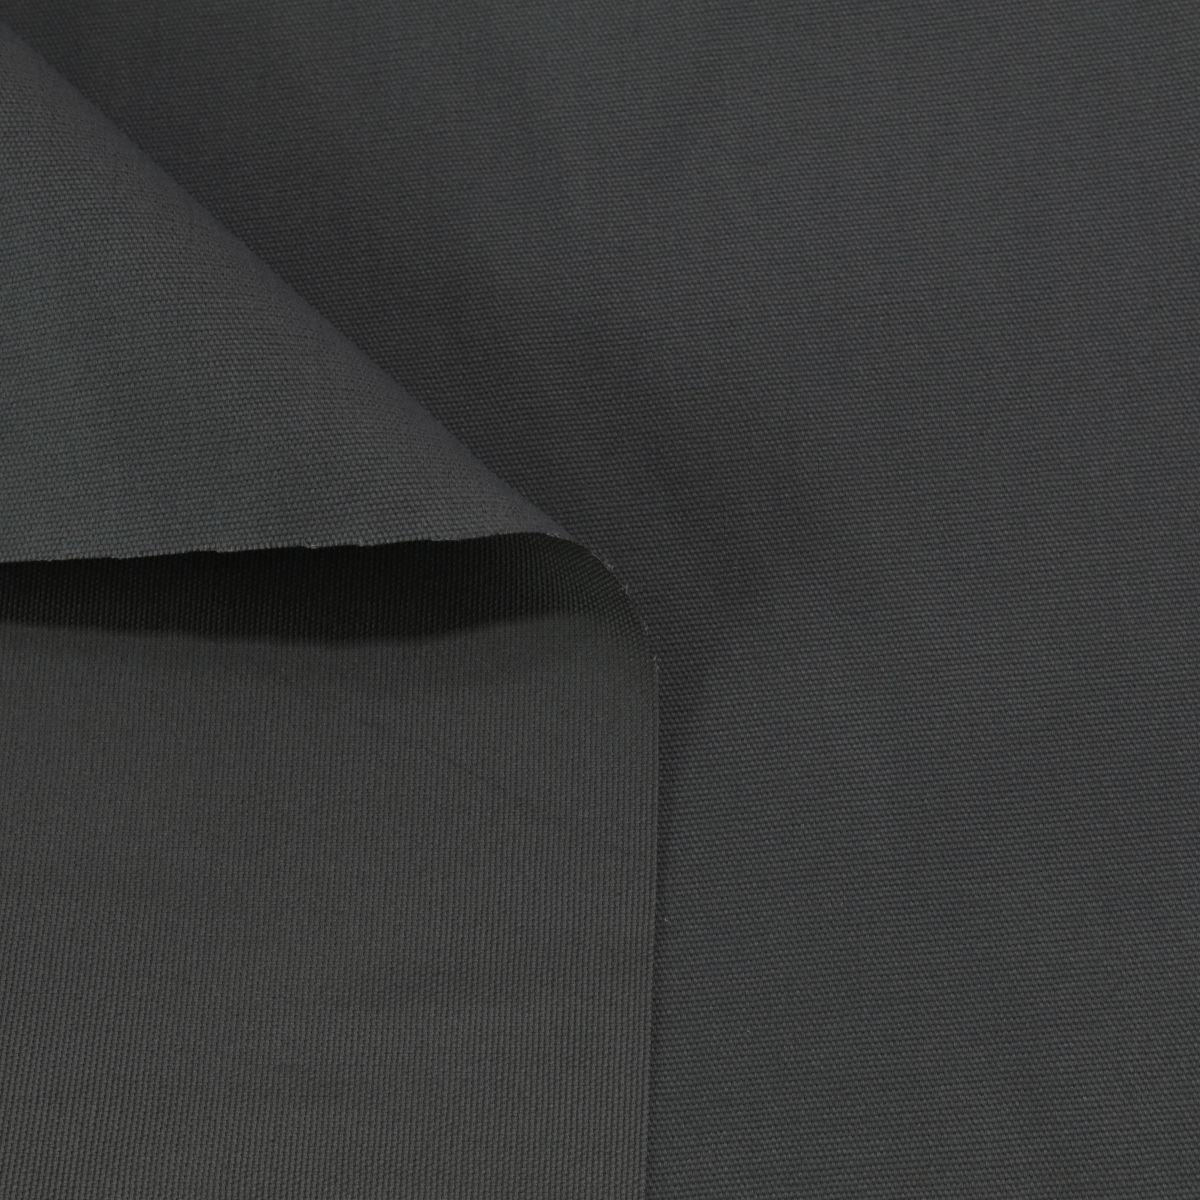 Canvas Stoff aus Baumwolle Meterware für Jacke Hose Polsterung - Grau